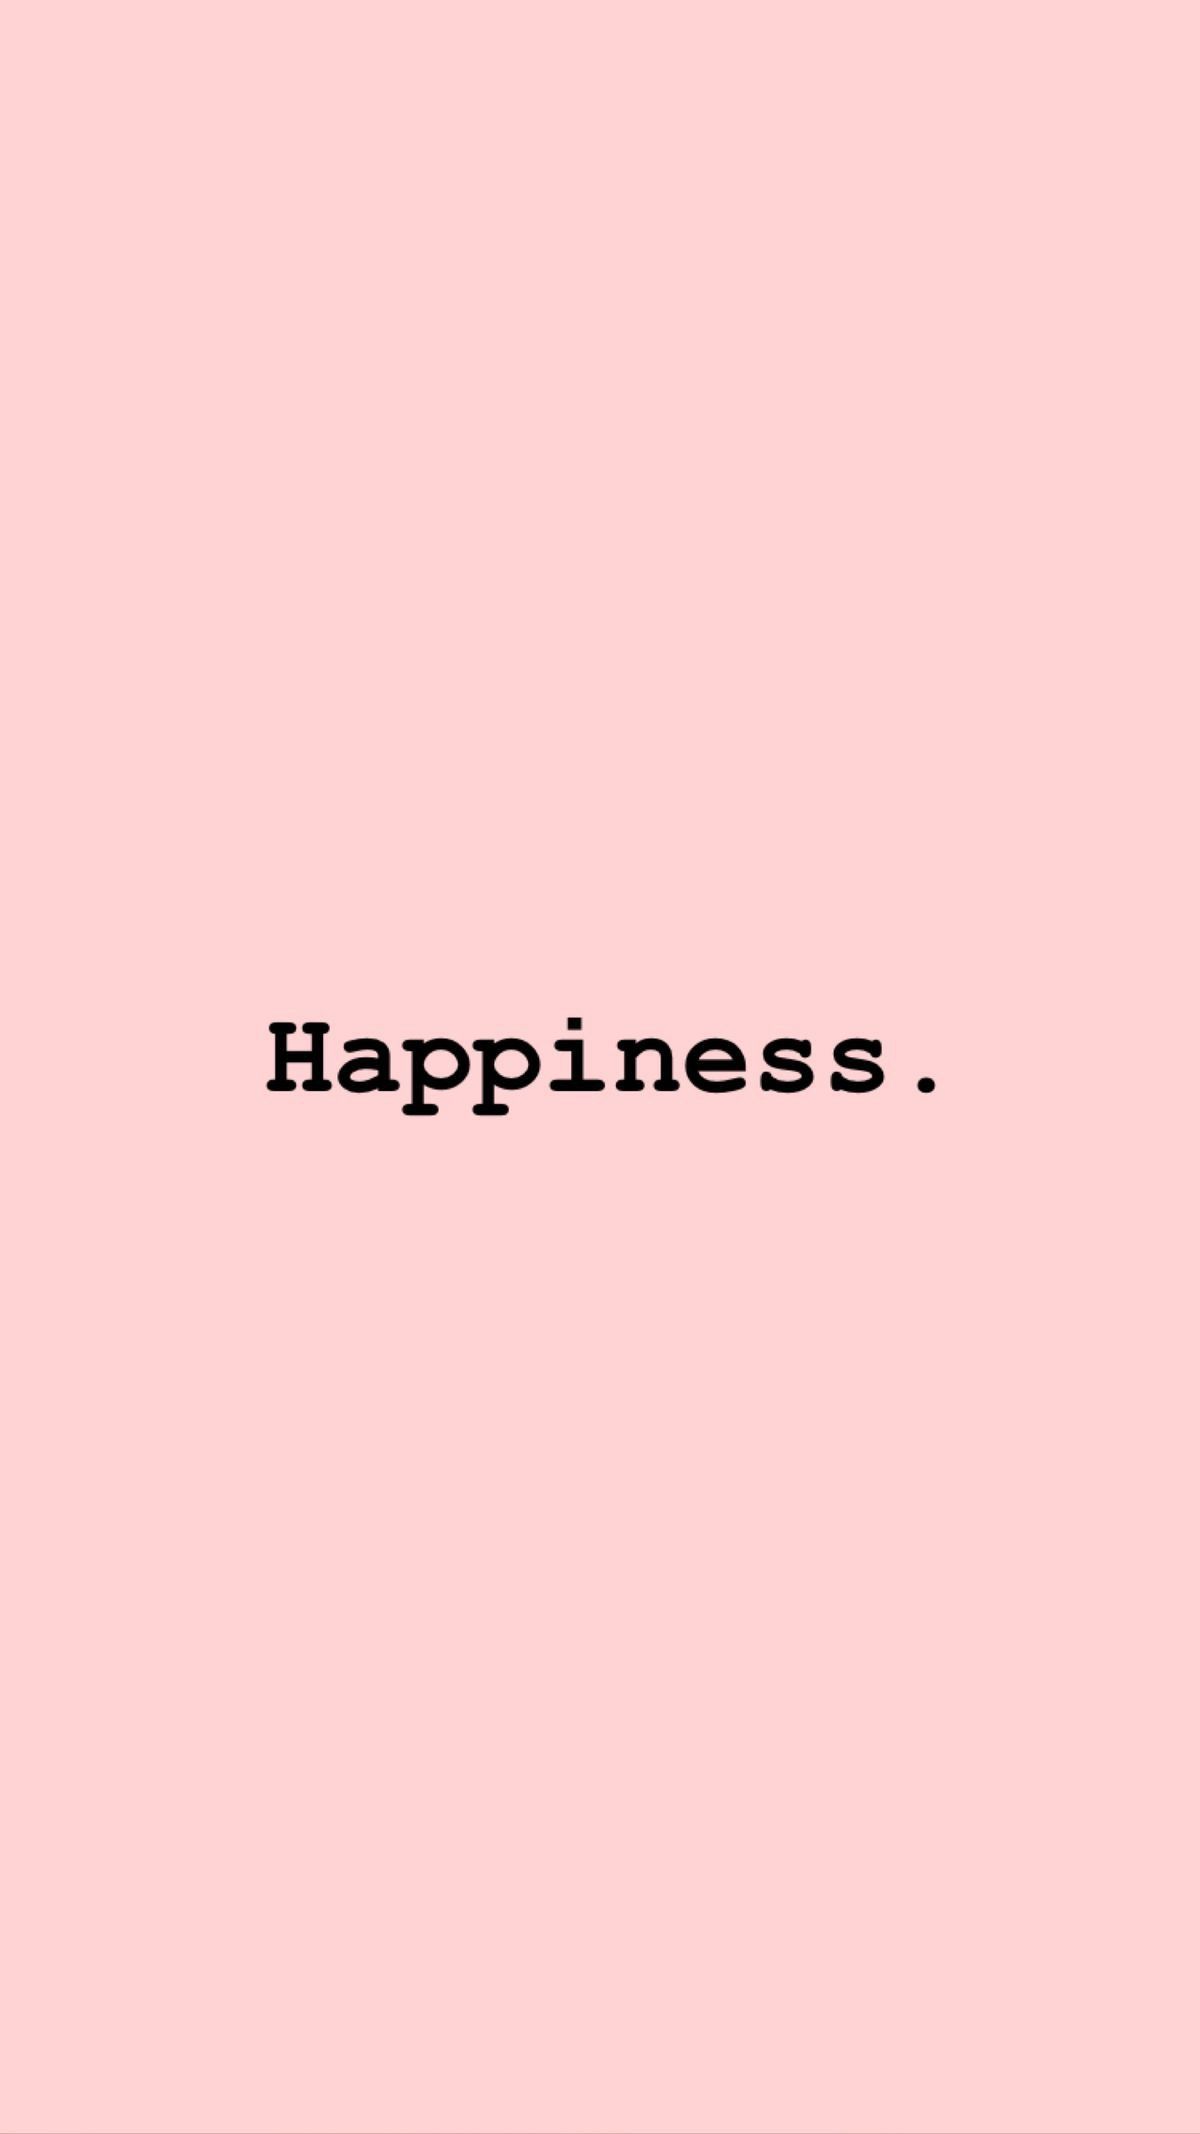 Happiness. - Happy